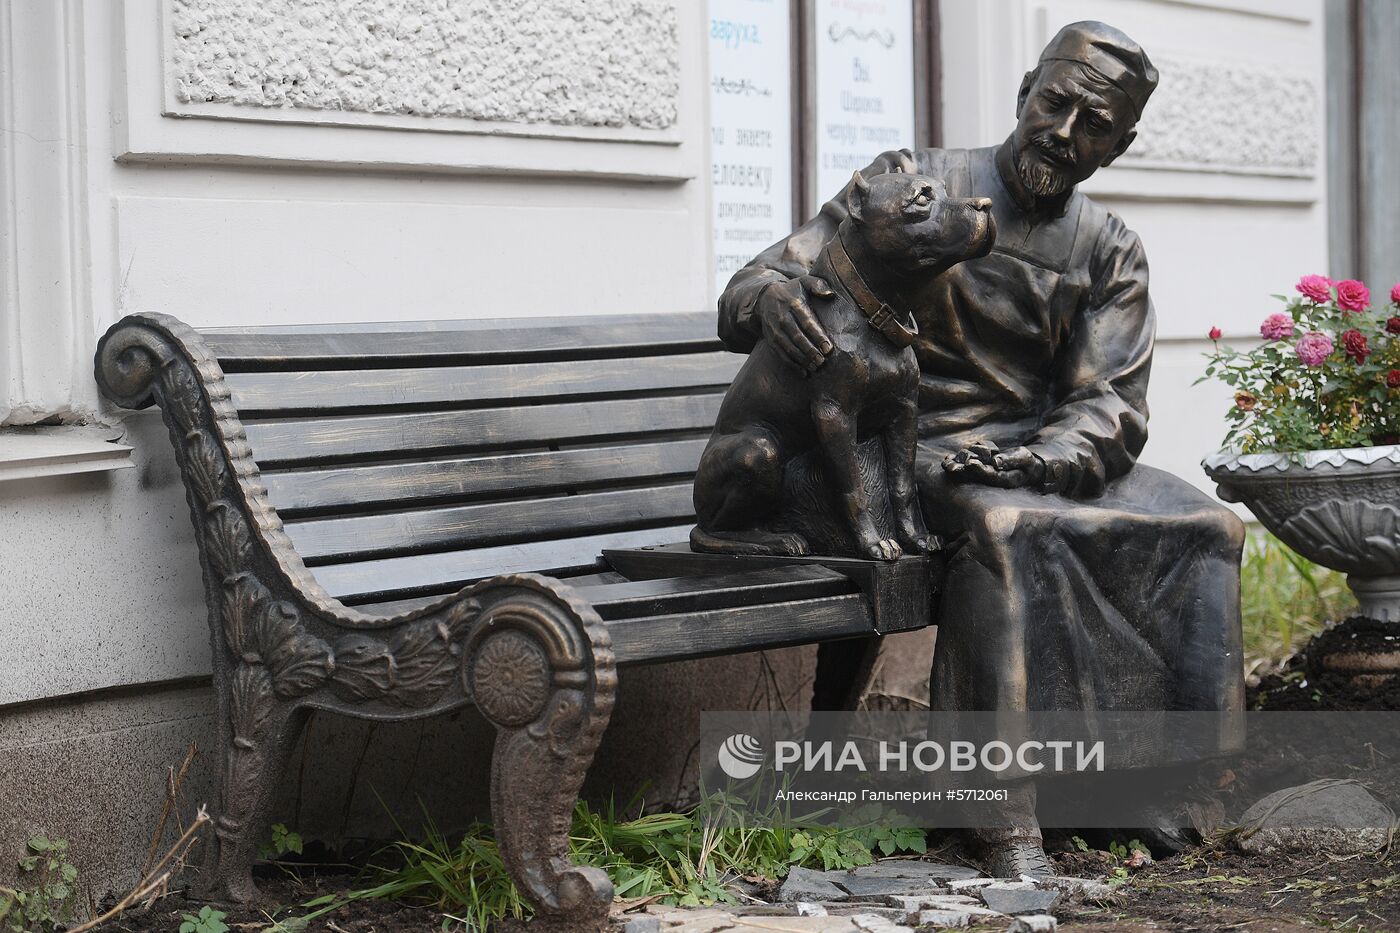 Открытие памятника героям фильма "Собачье сердце" в Санкт-Петербурге 